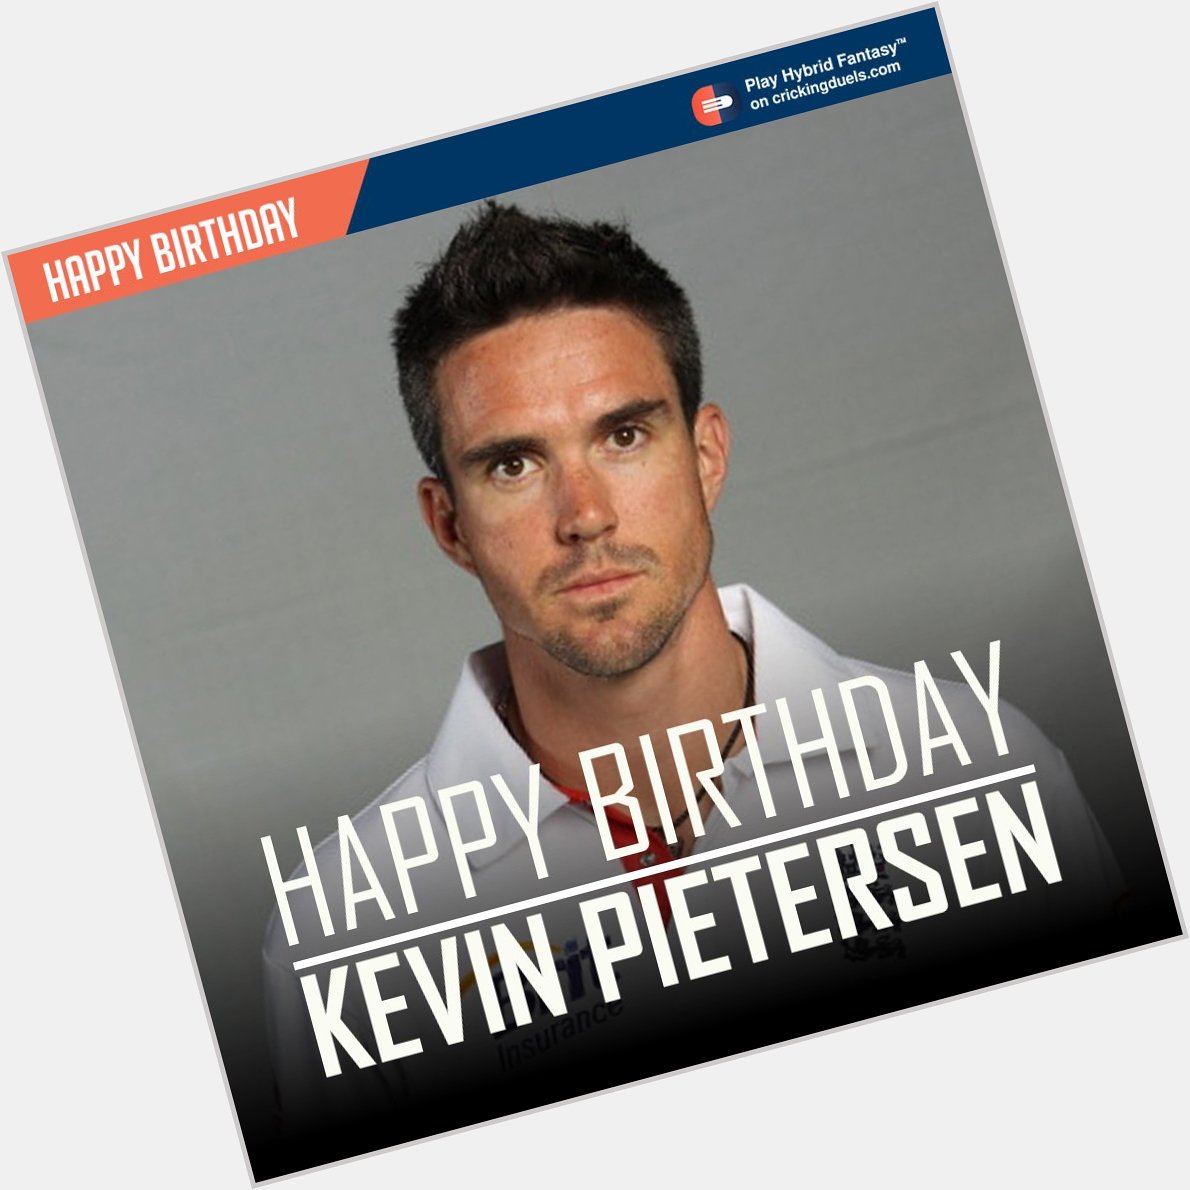 Happy Birthday Kevin Pietersen. 